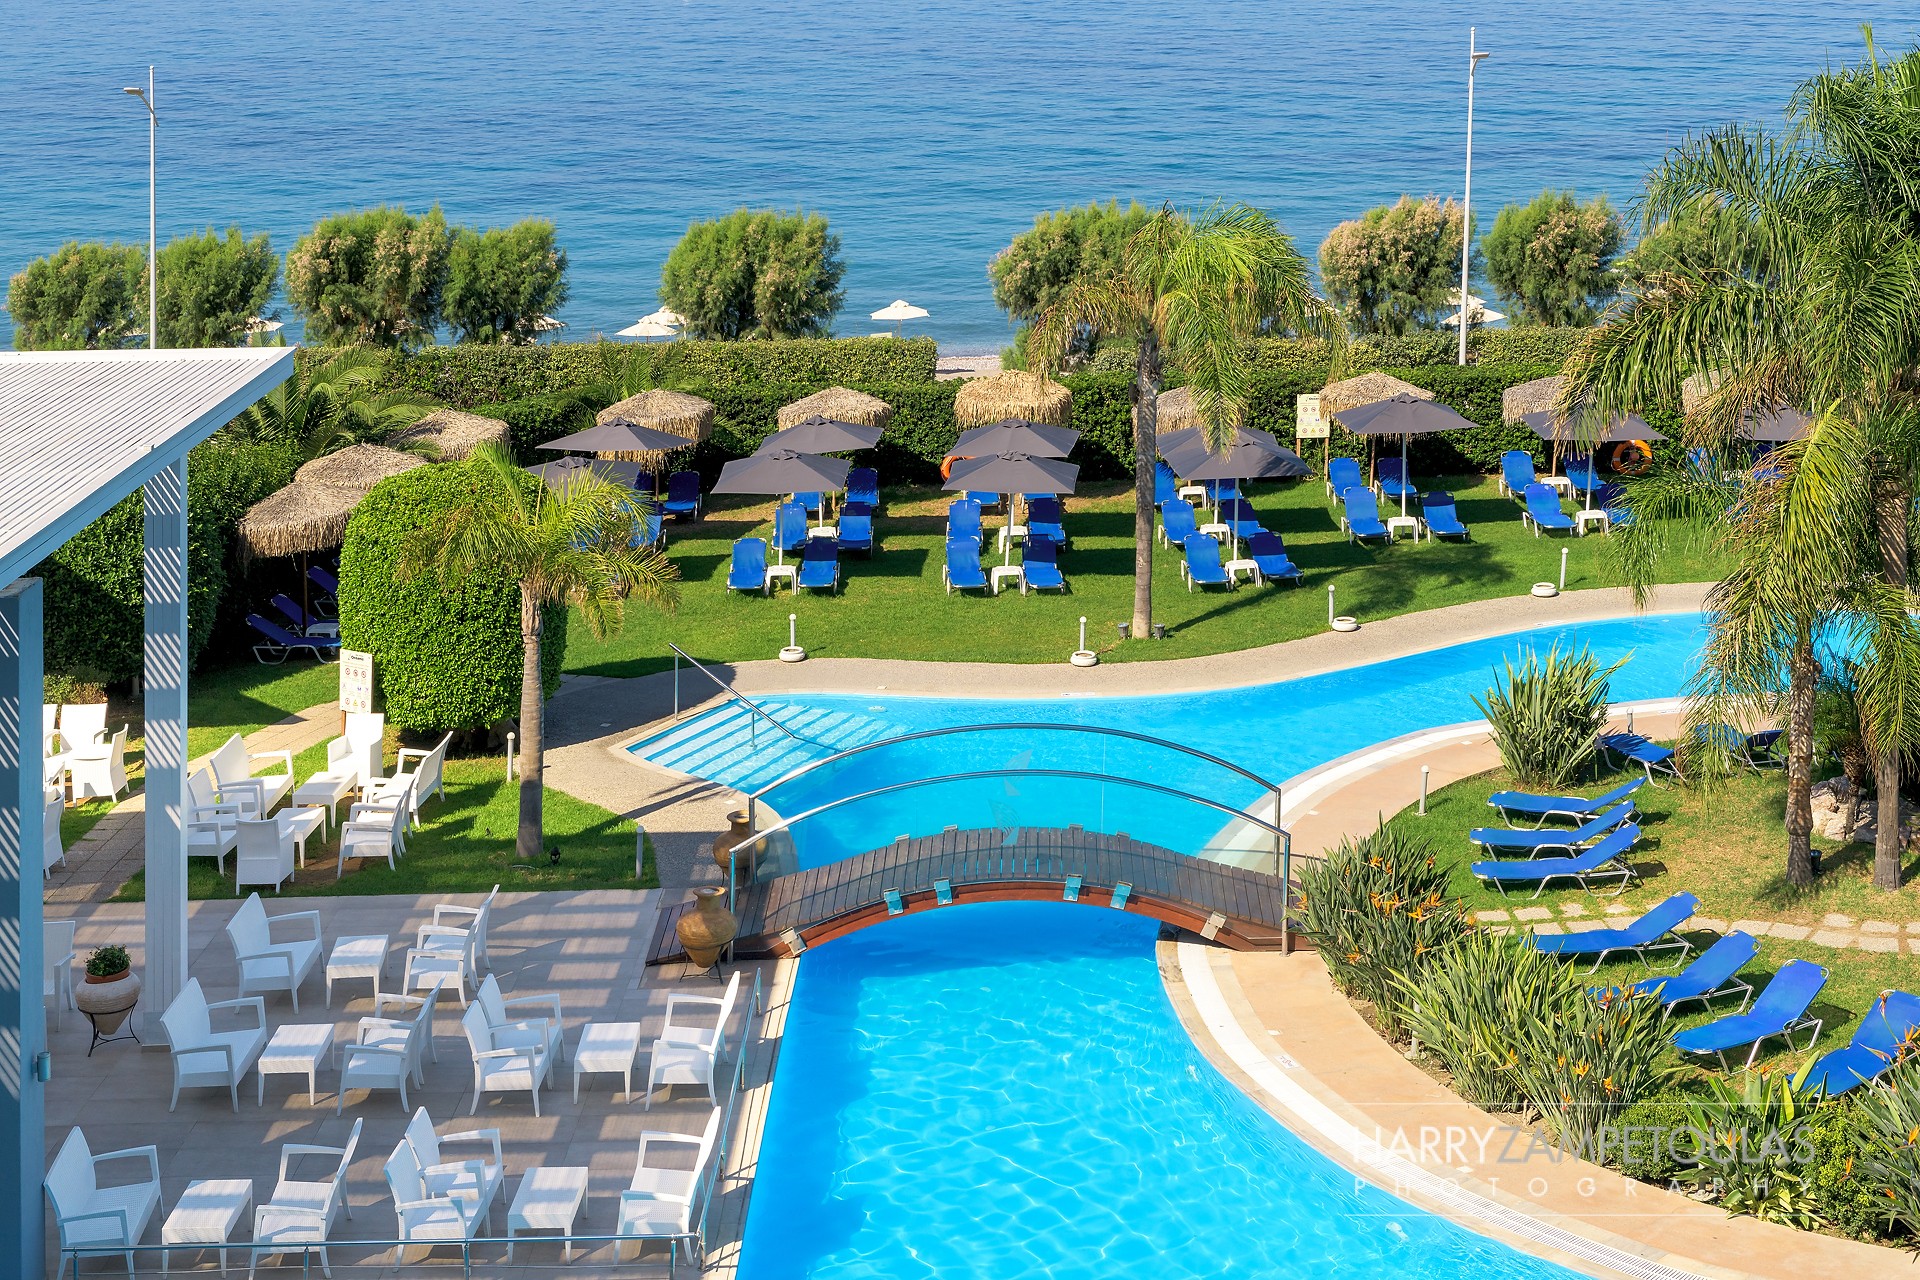 Oceanis-Hotel-Rhodes-Harry-Zampetoulas-Photography-17 Oceanis Hotel Rhodes - Φωτογράφιση Ξενοδοχείου Χάρης Ζαμπετούλας 